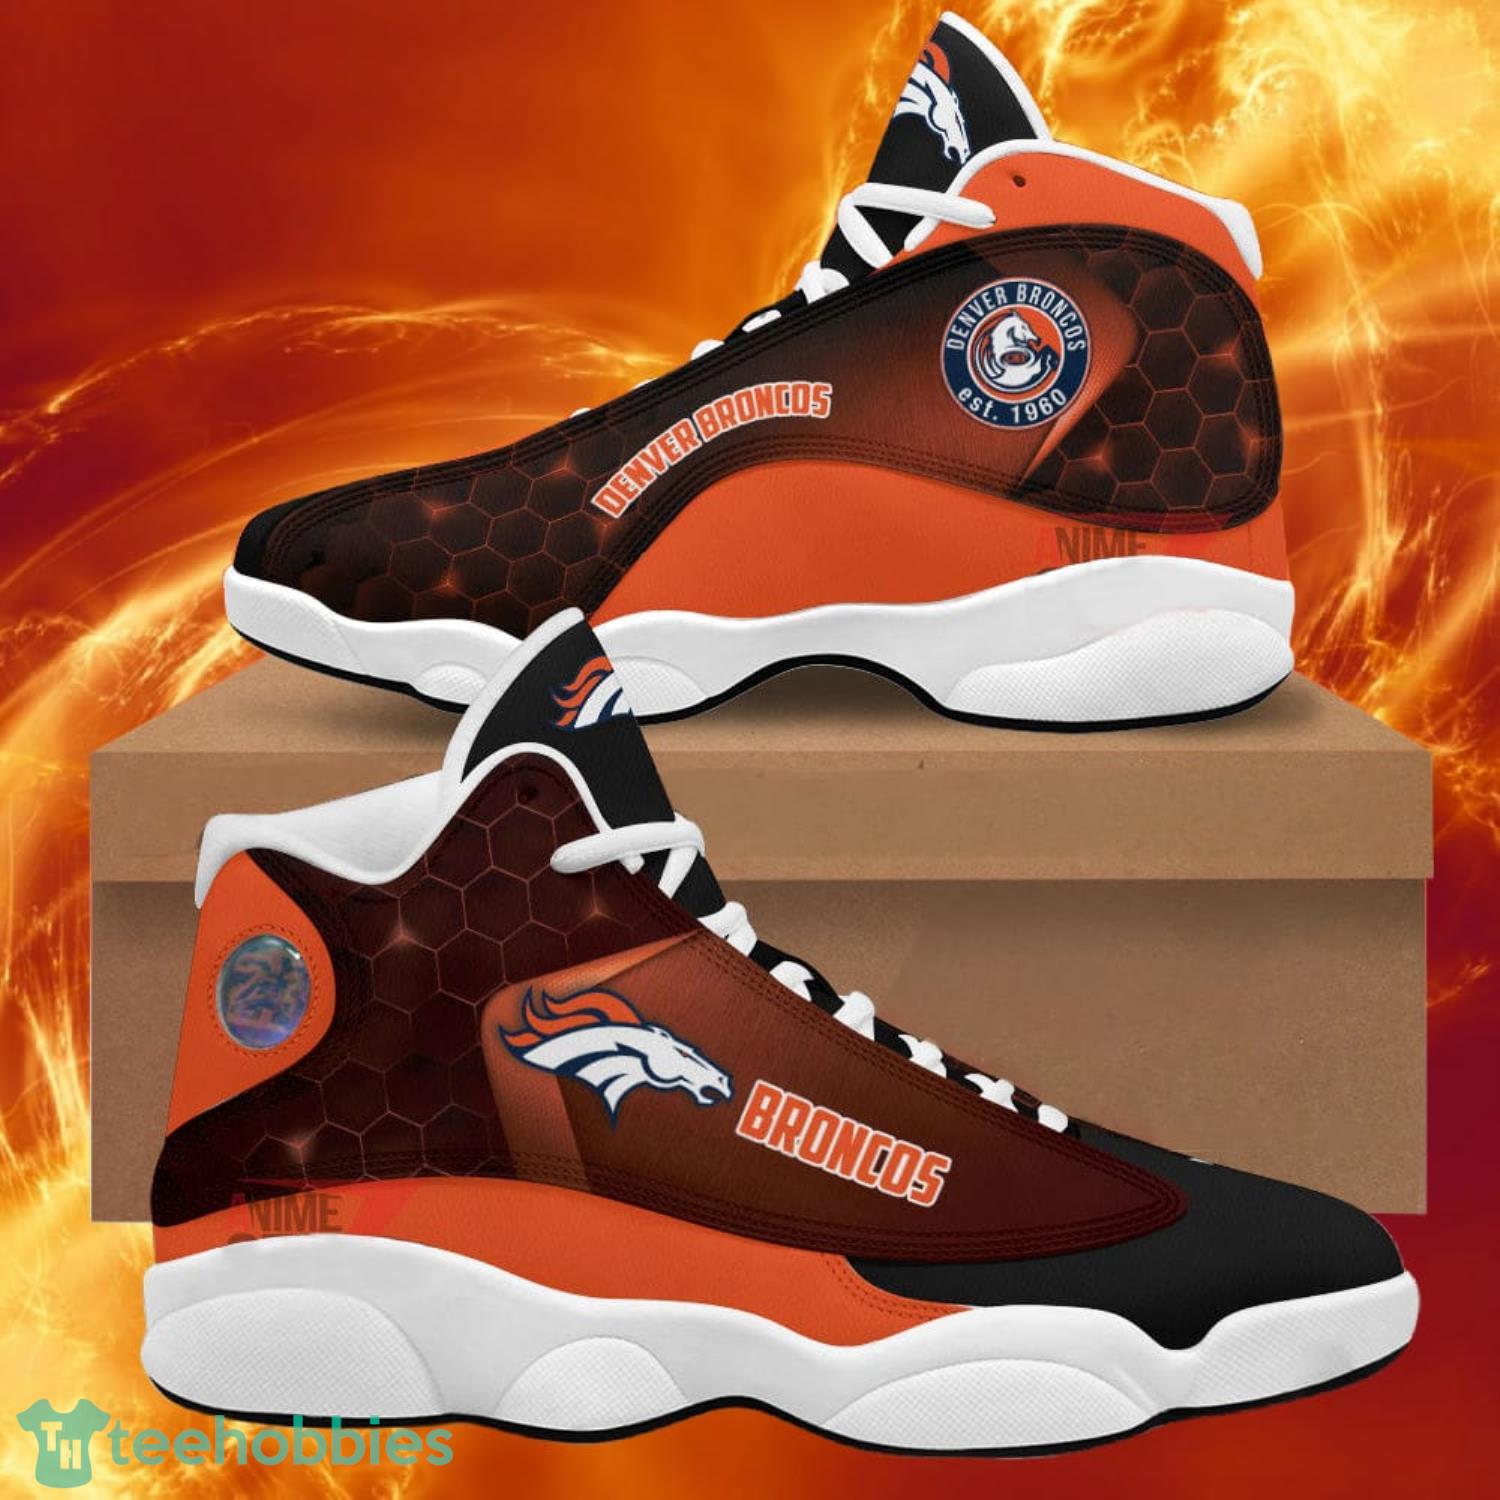 make a custom sneaker shoe air jordan 1 for you